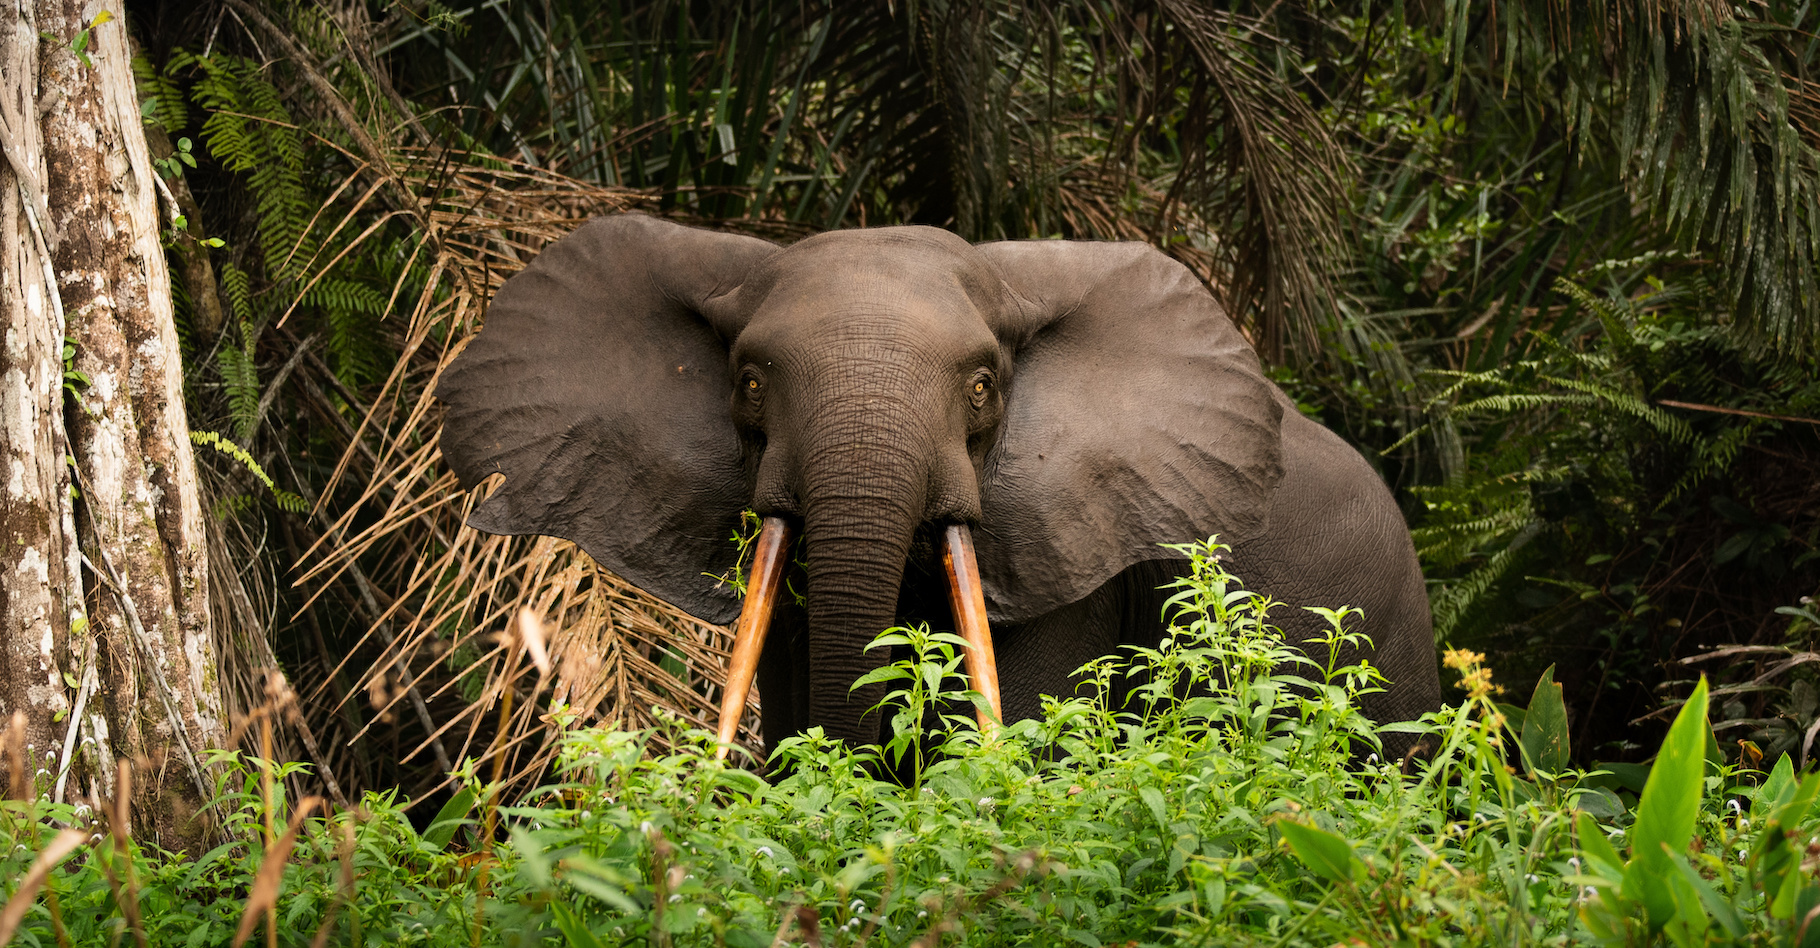 Des chercheurs montrent aujourd’hui comment l’éléphant d’Afrique prend soin de sa forêt, nous aidant ainsi à lutter contre le réchauffement climatique. © jwngshar narzary/EyeEm, Adobe Stock